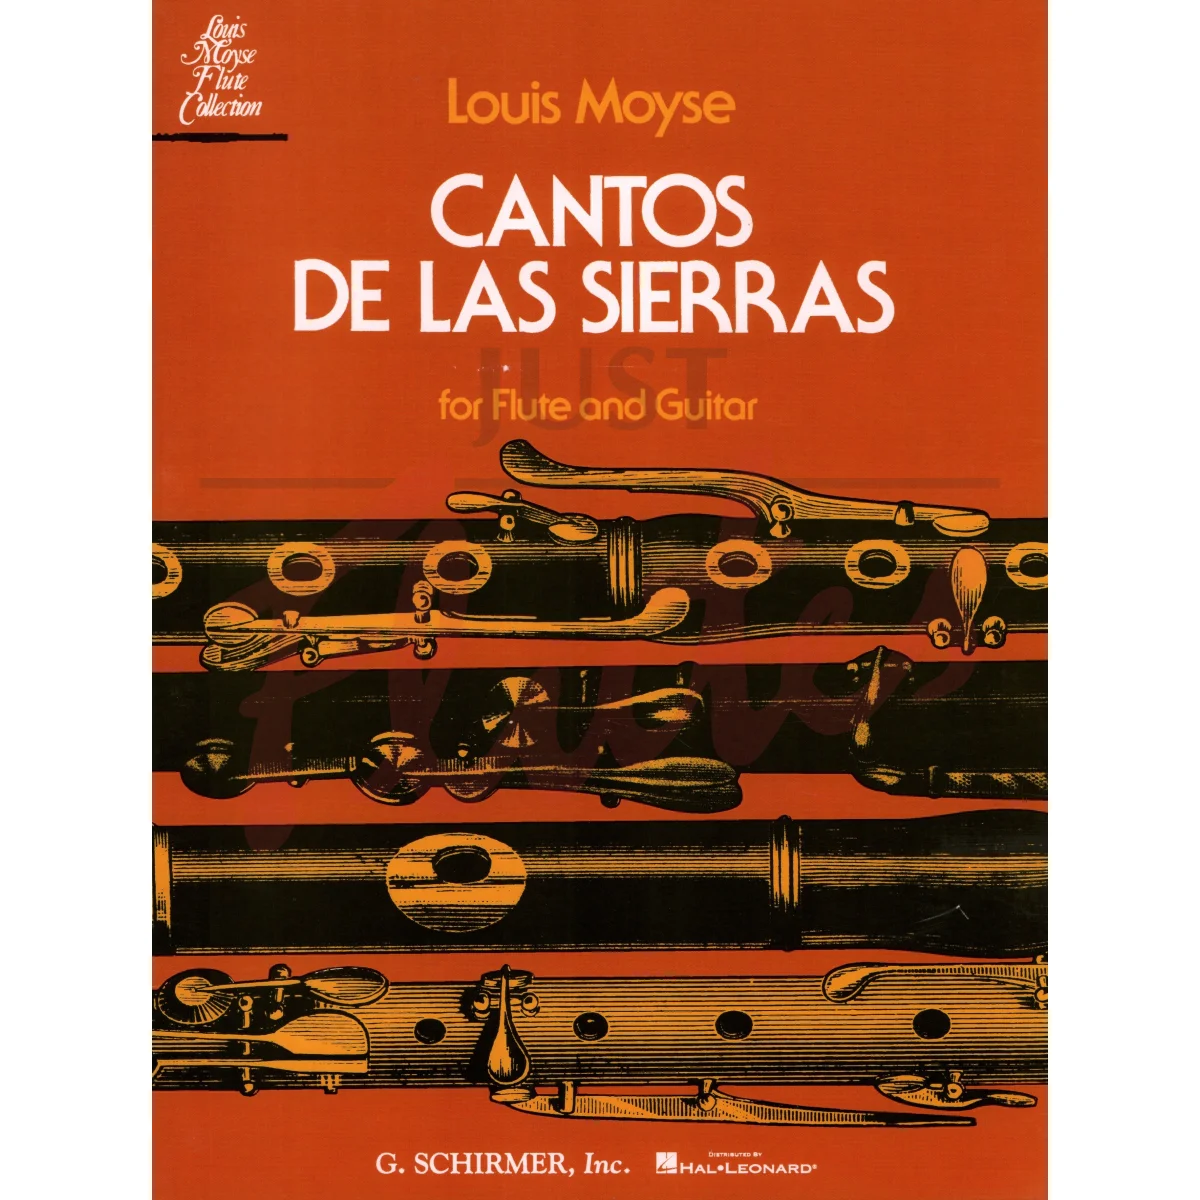 Cantos de las Sierras for Flute and Guitar